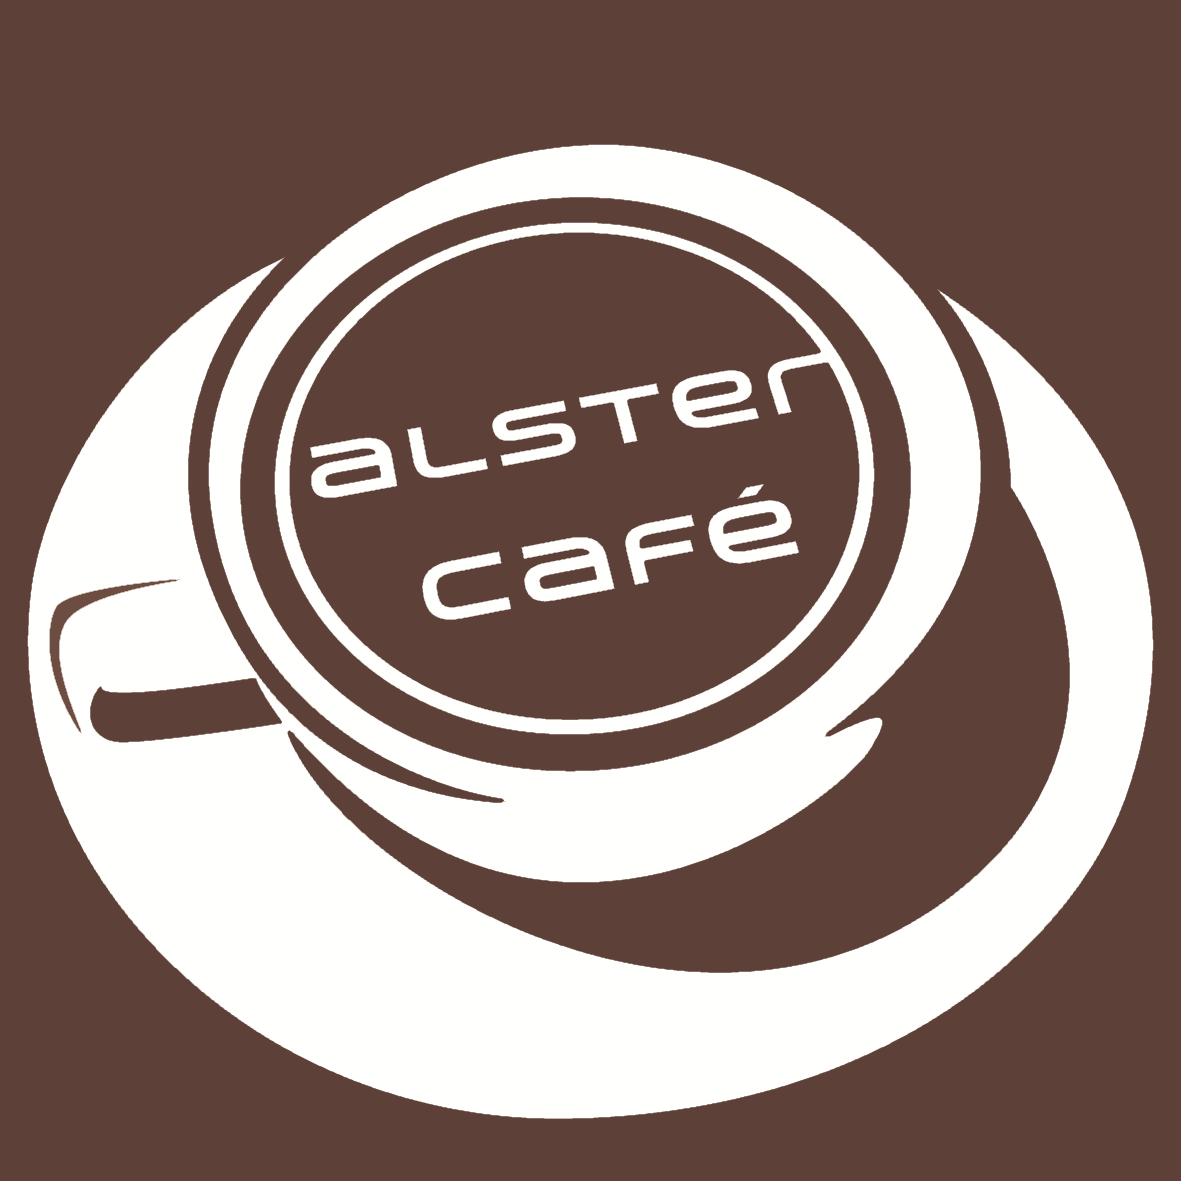 Alstercafé Café in Hamburg Hohenfelde – Frühstück, Mittagstisch und vieles mehr…